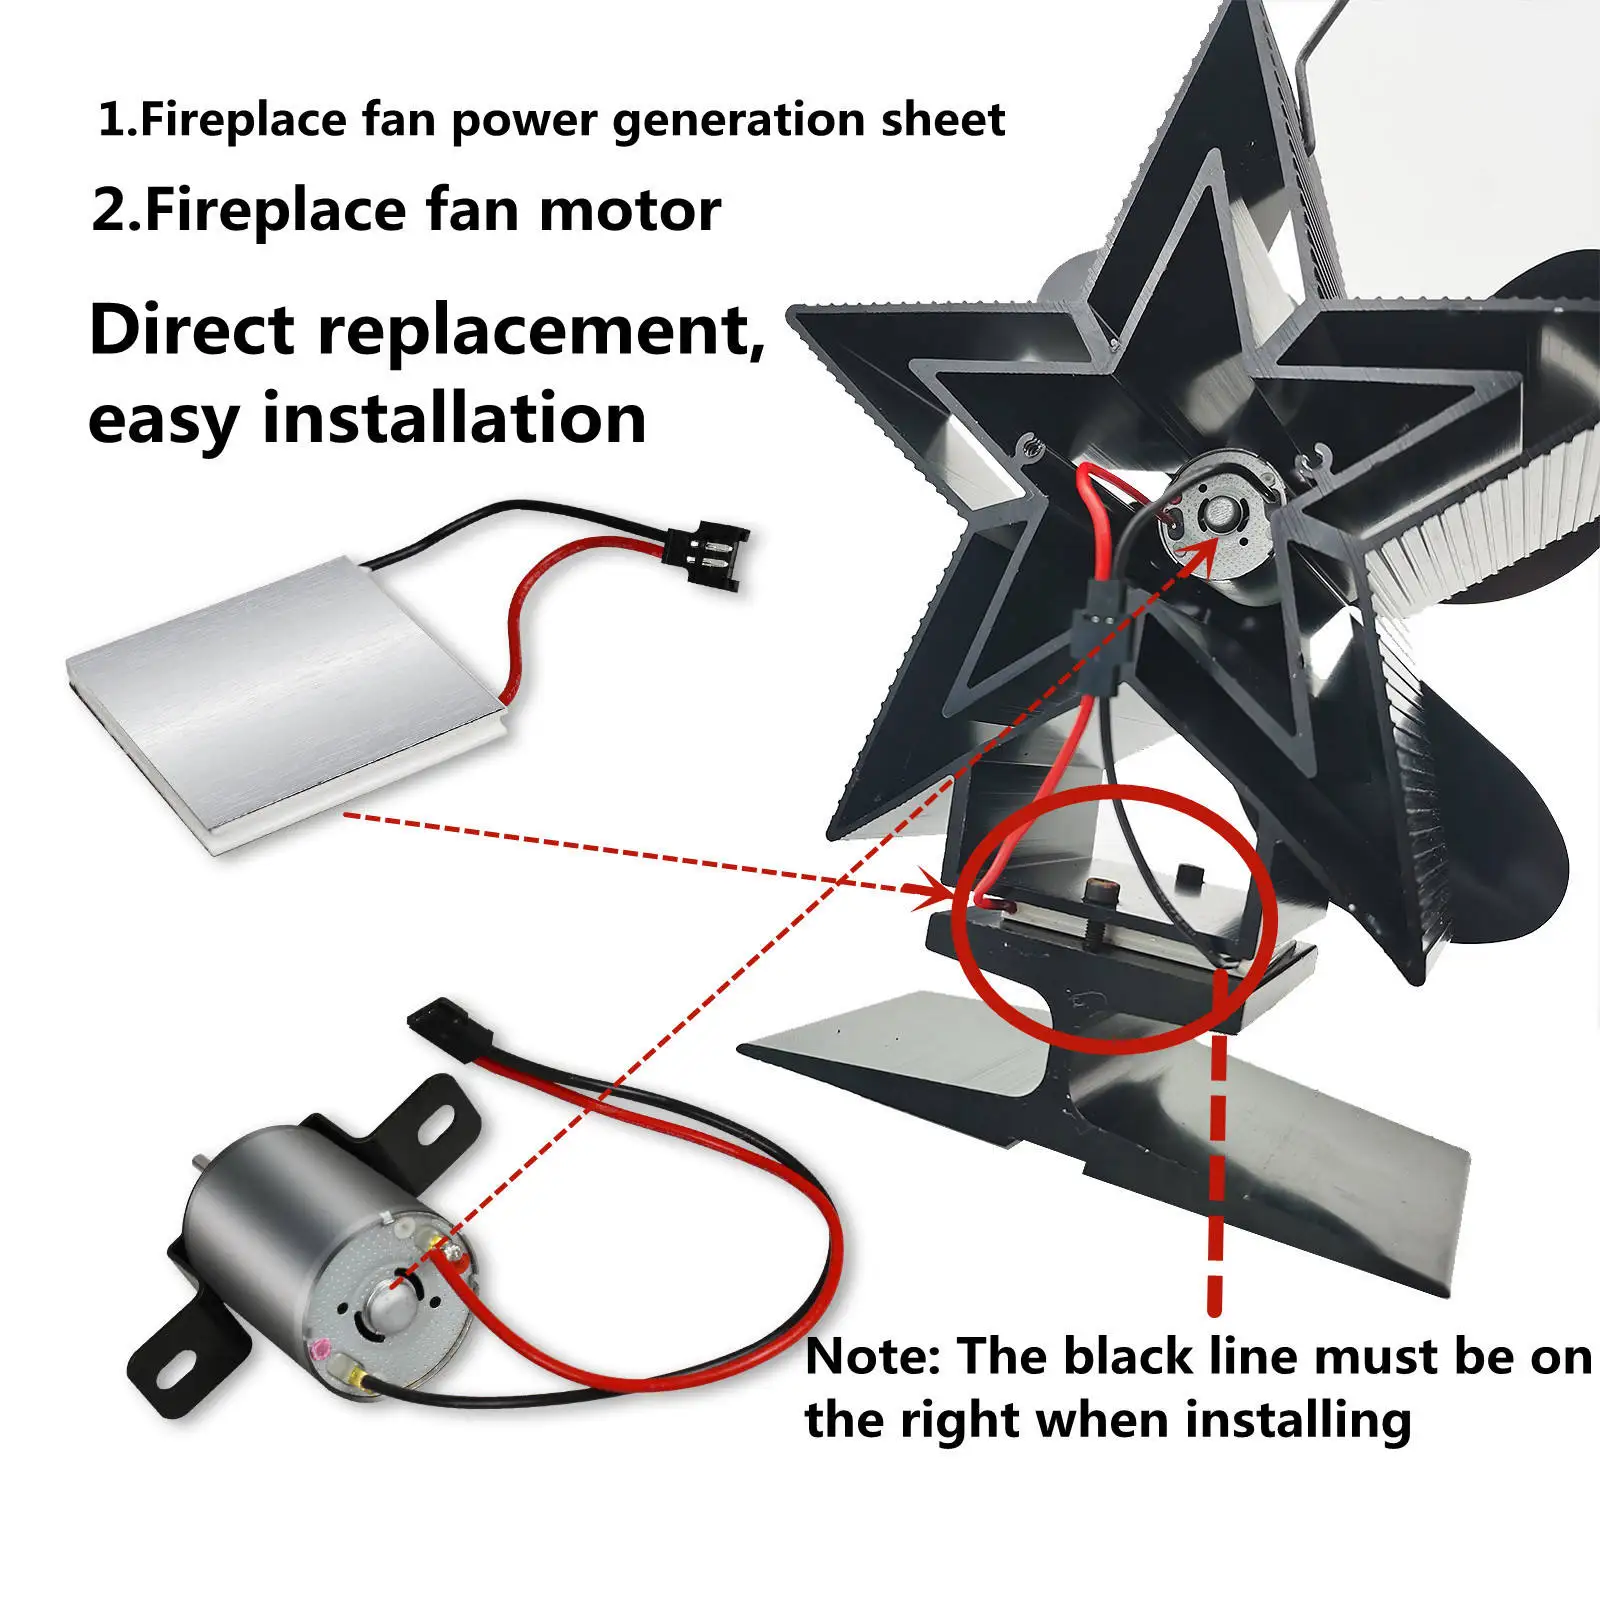 Fireplace Fan Motor Metal for Generator Piece Power Generation Set Blower Fan